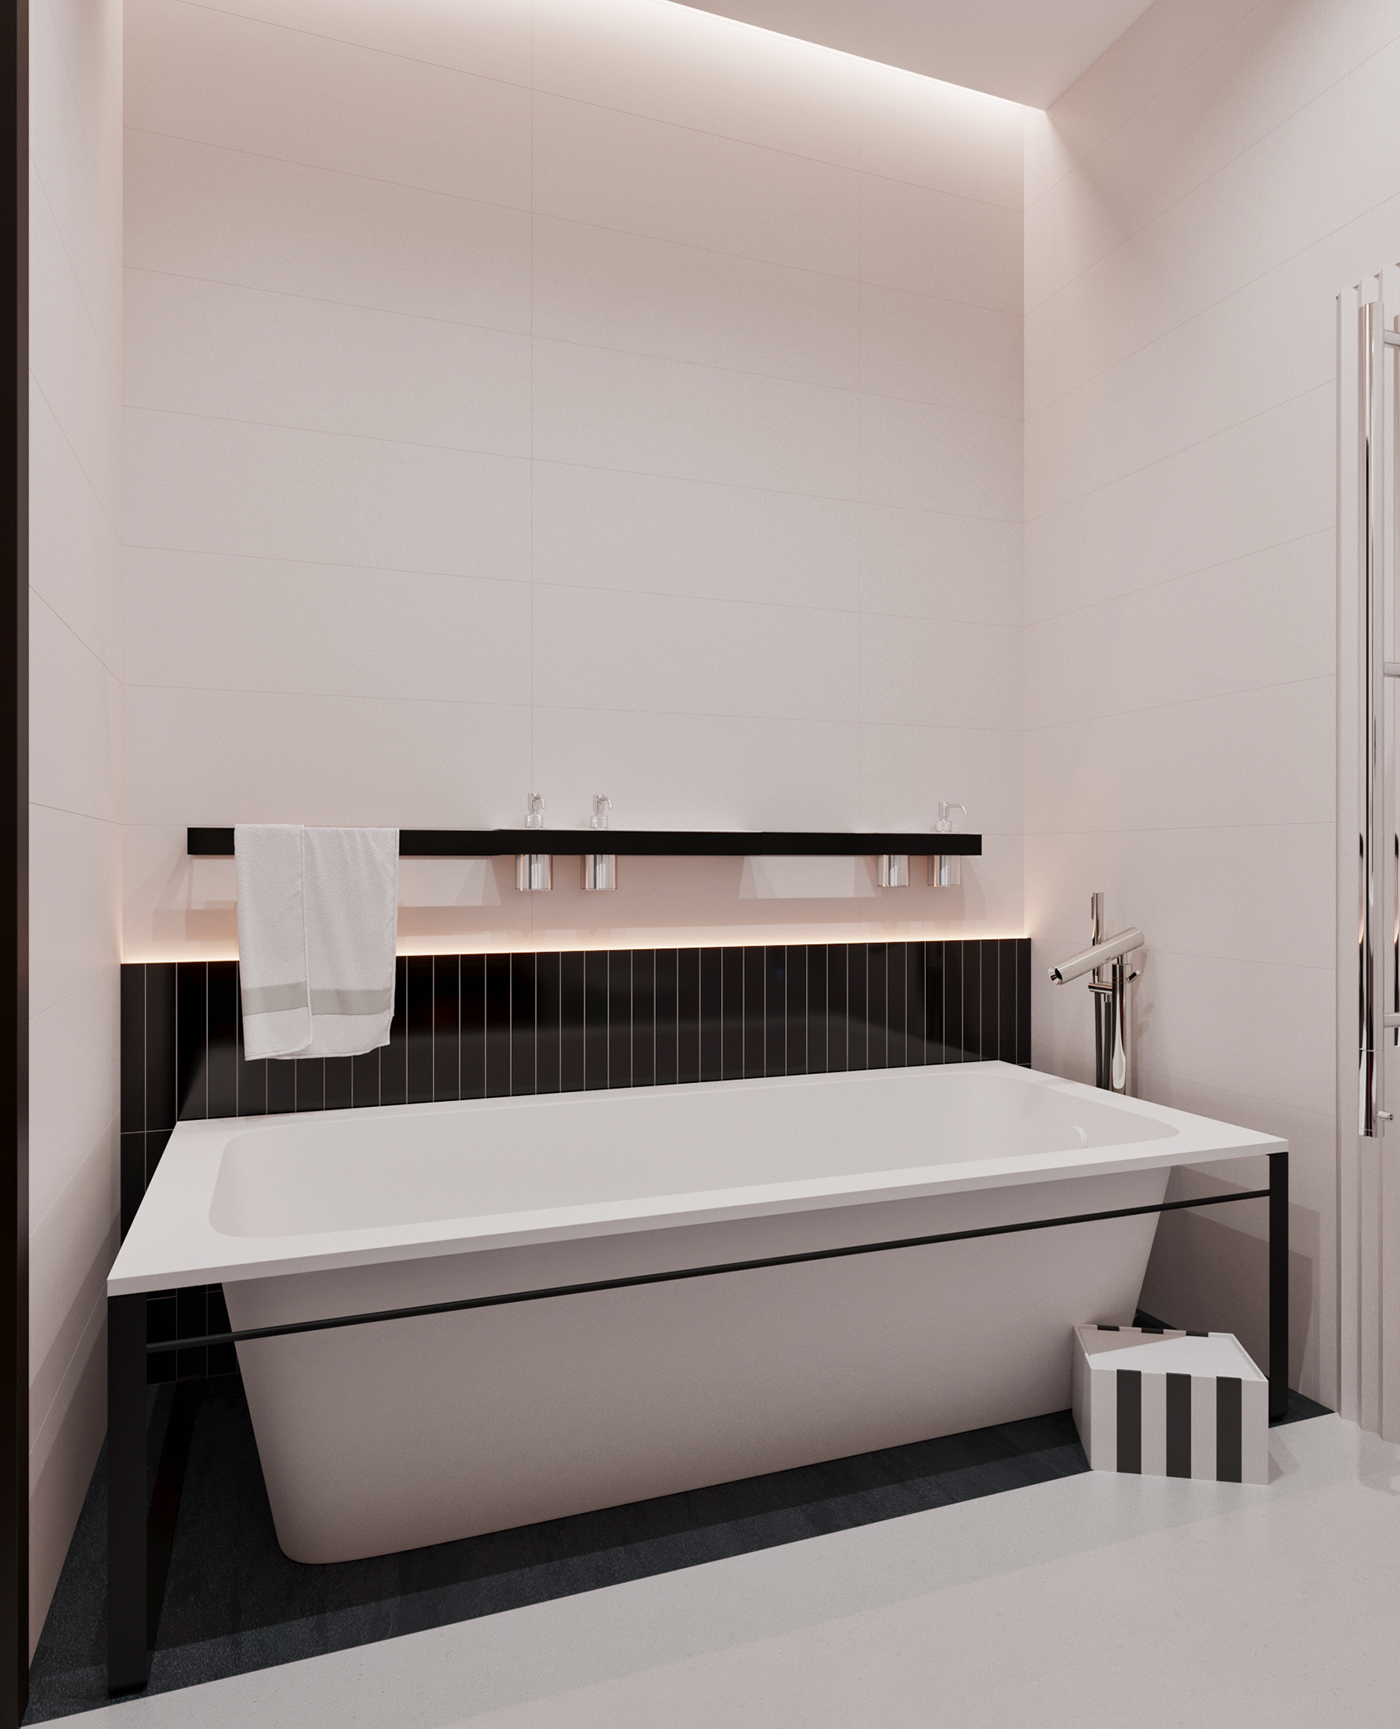 bathroom bathroom design sochi archiguide interiror design 3D Design Project bathroom ideas